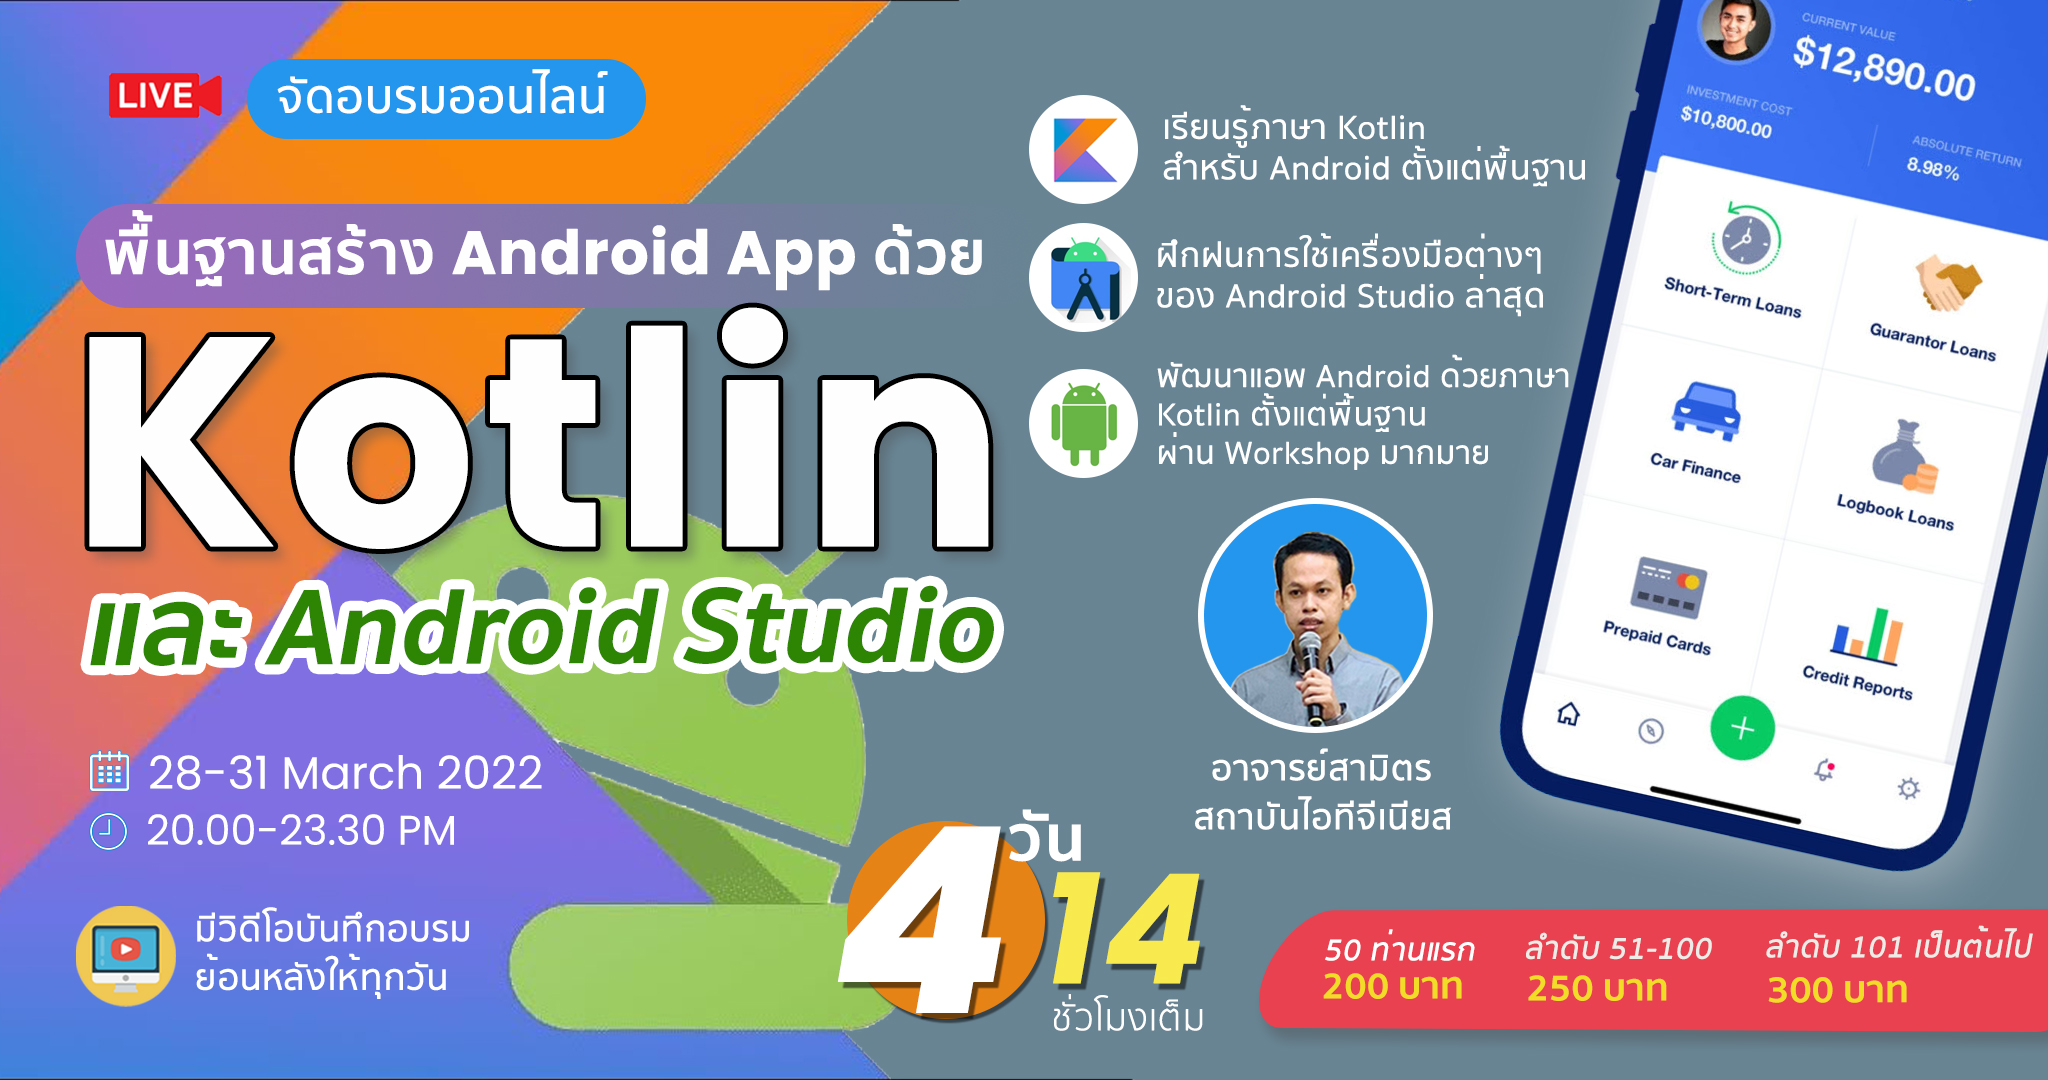 Basic Android Development With Kotlin (สำหรับผู้เริ่มต้น) เรียน สอน จัดอบรม  คอร์ส หลักสูตรอบรม | สถาบันสอนทำเว็บไซต์ เรียนทำเว็บ เรียนเขียนโปรแกรม  แอพพลิเคชั่น Android Ios ไอทีจีเนียส เอ็นจิเนียริ่ง จำกัด